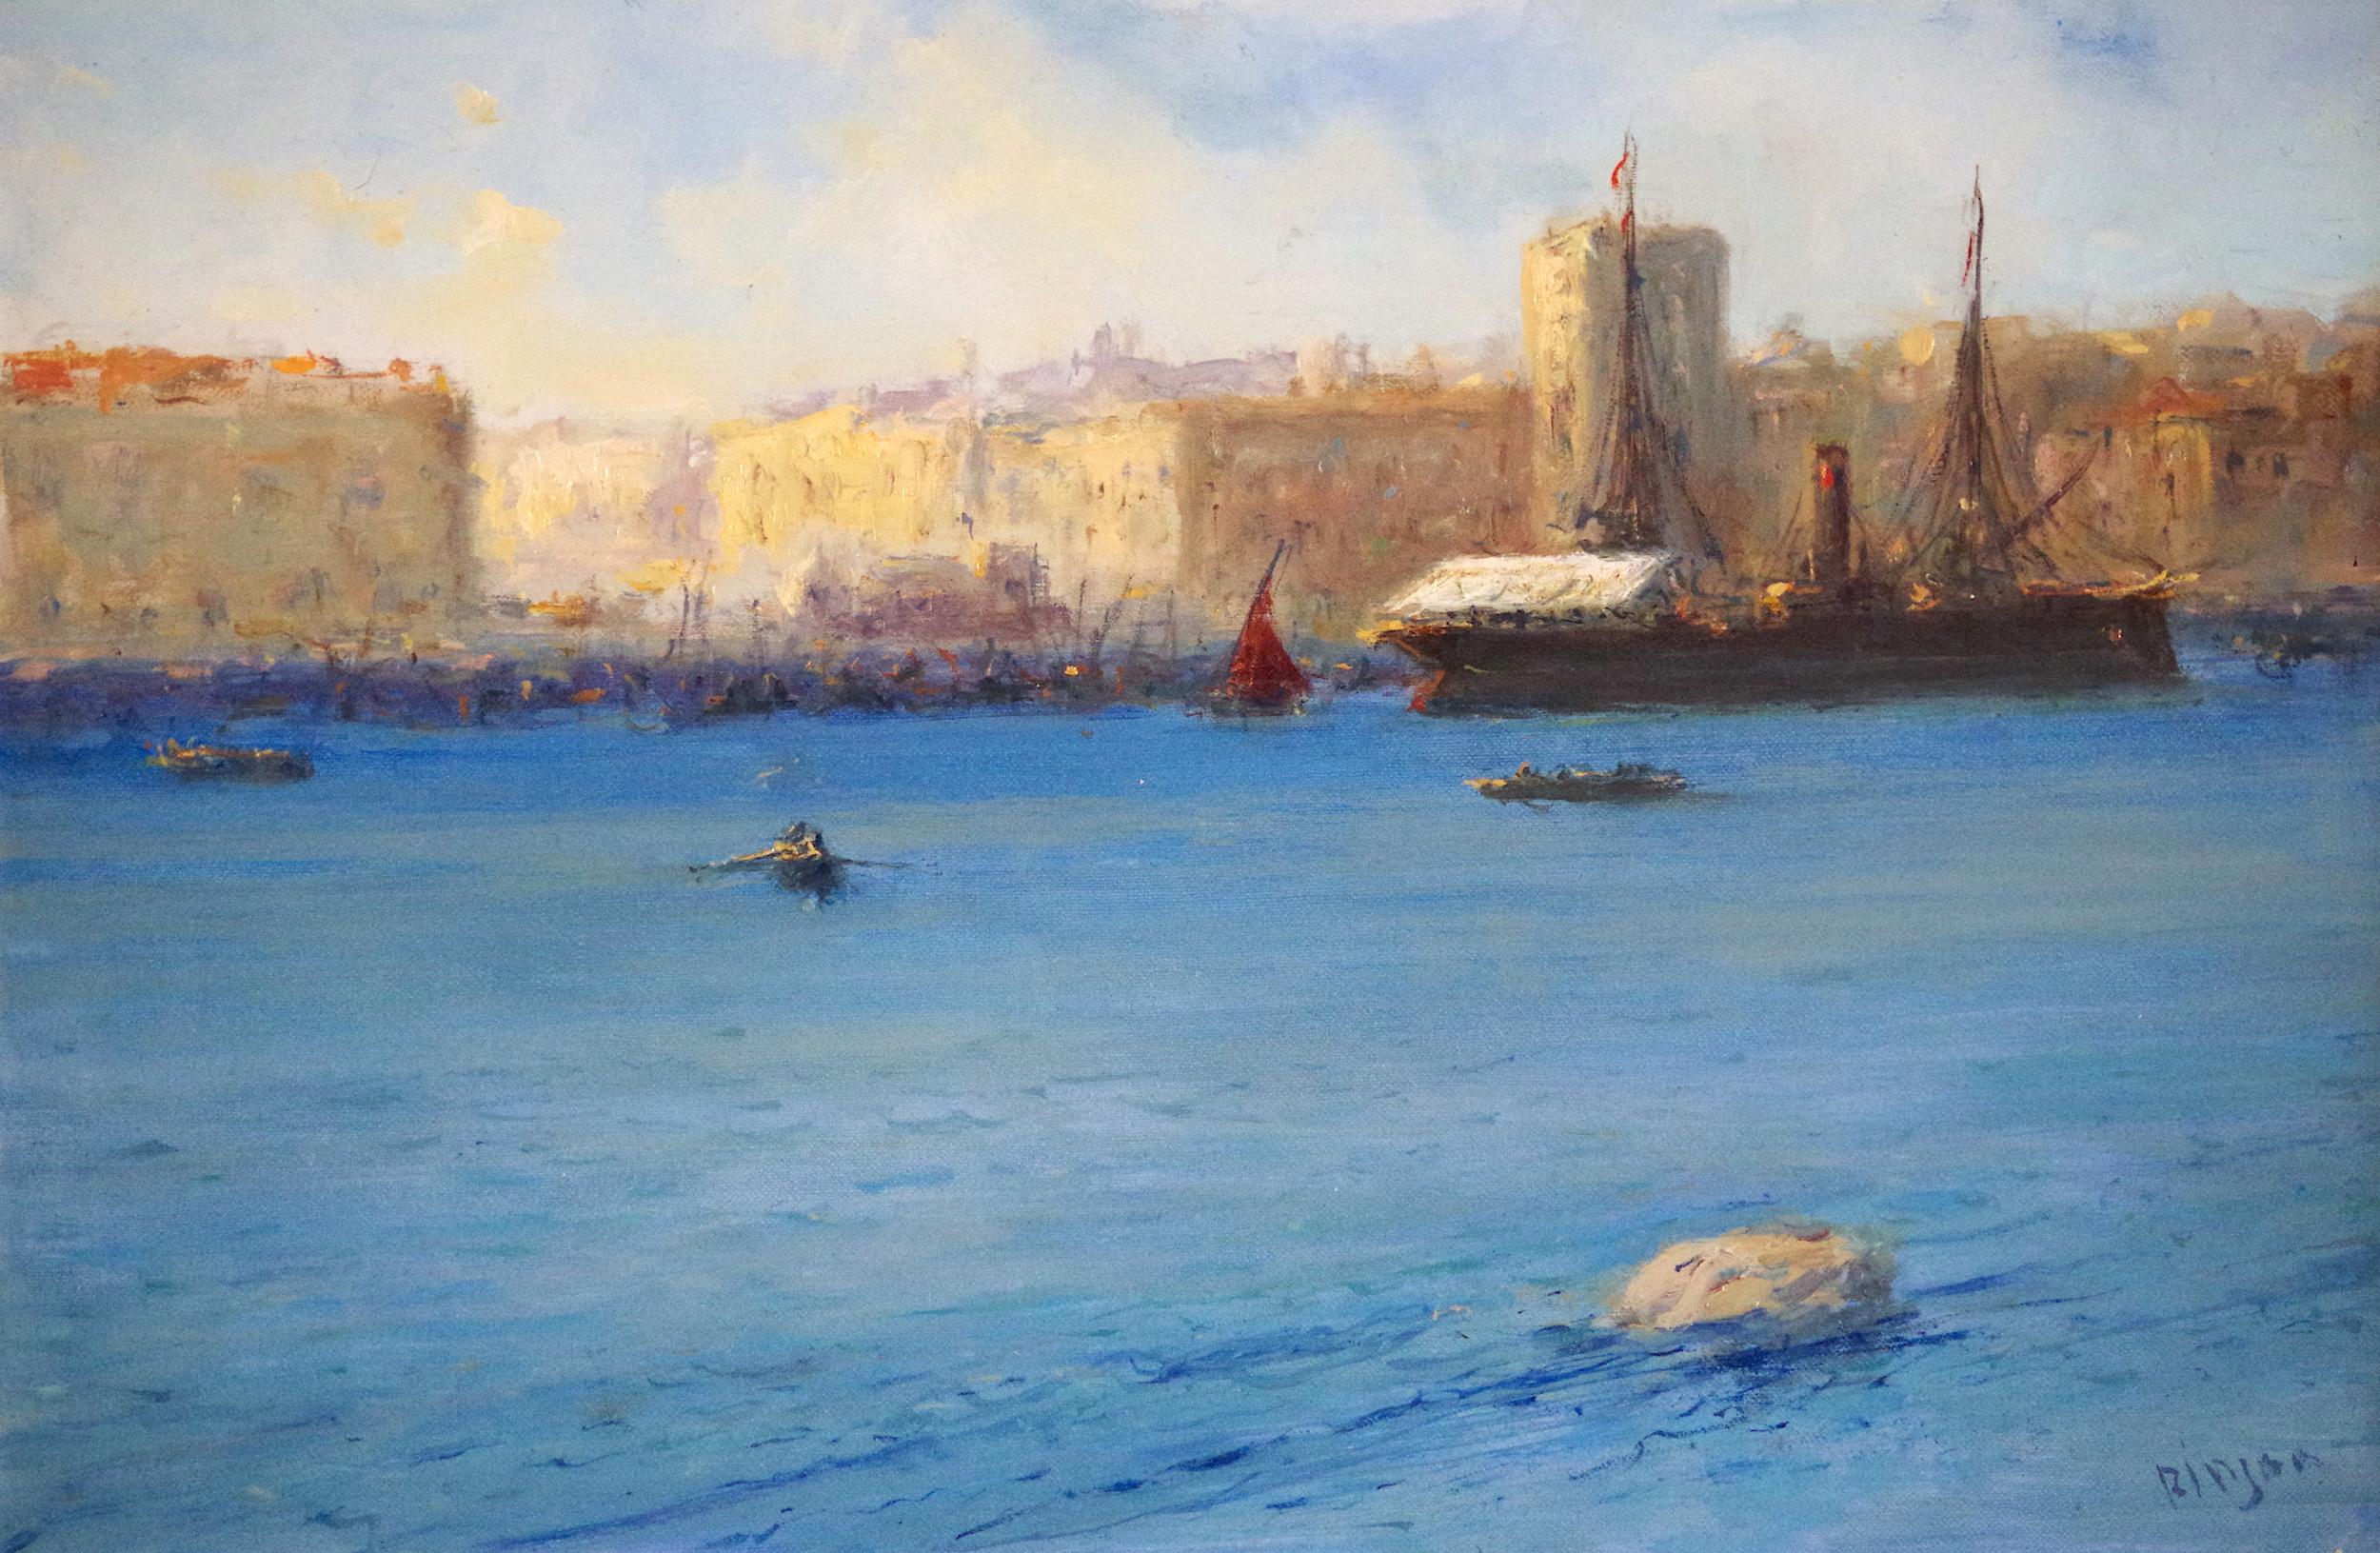 Karen Darbinyan Landscape Painting - Venice Harbor